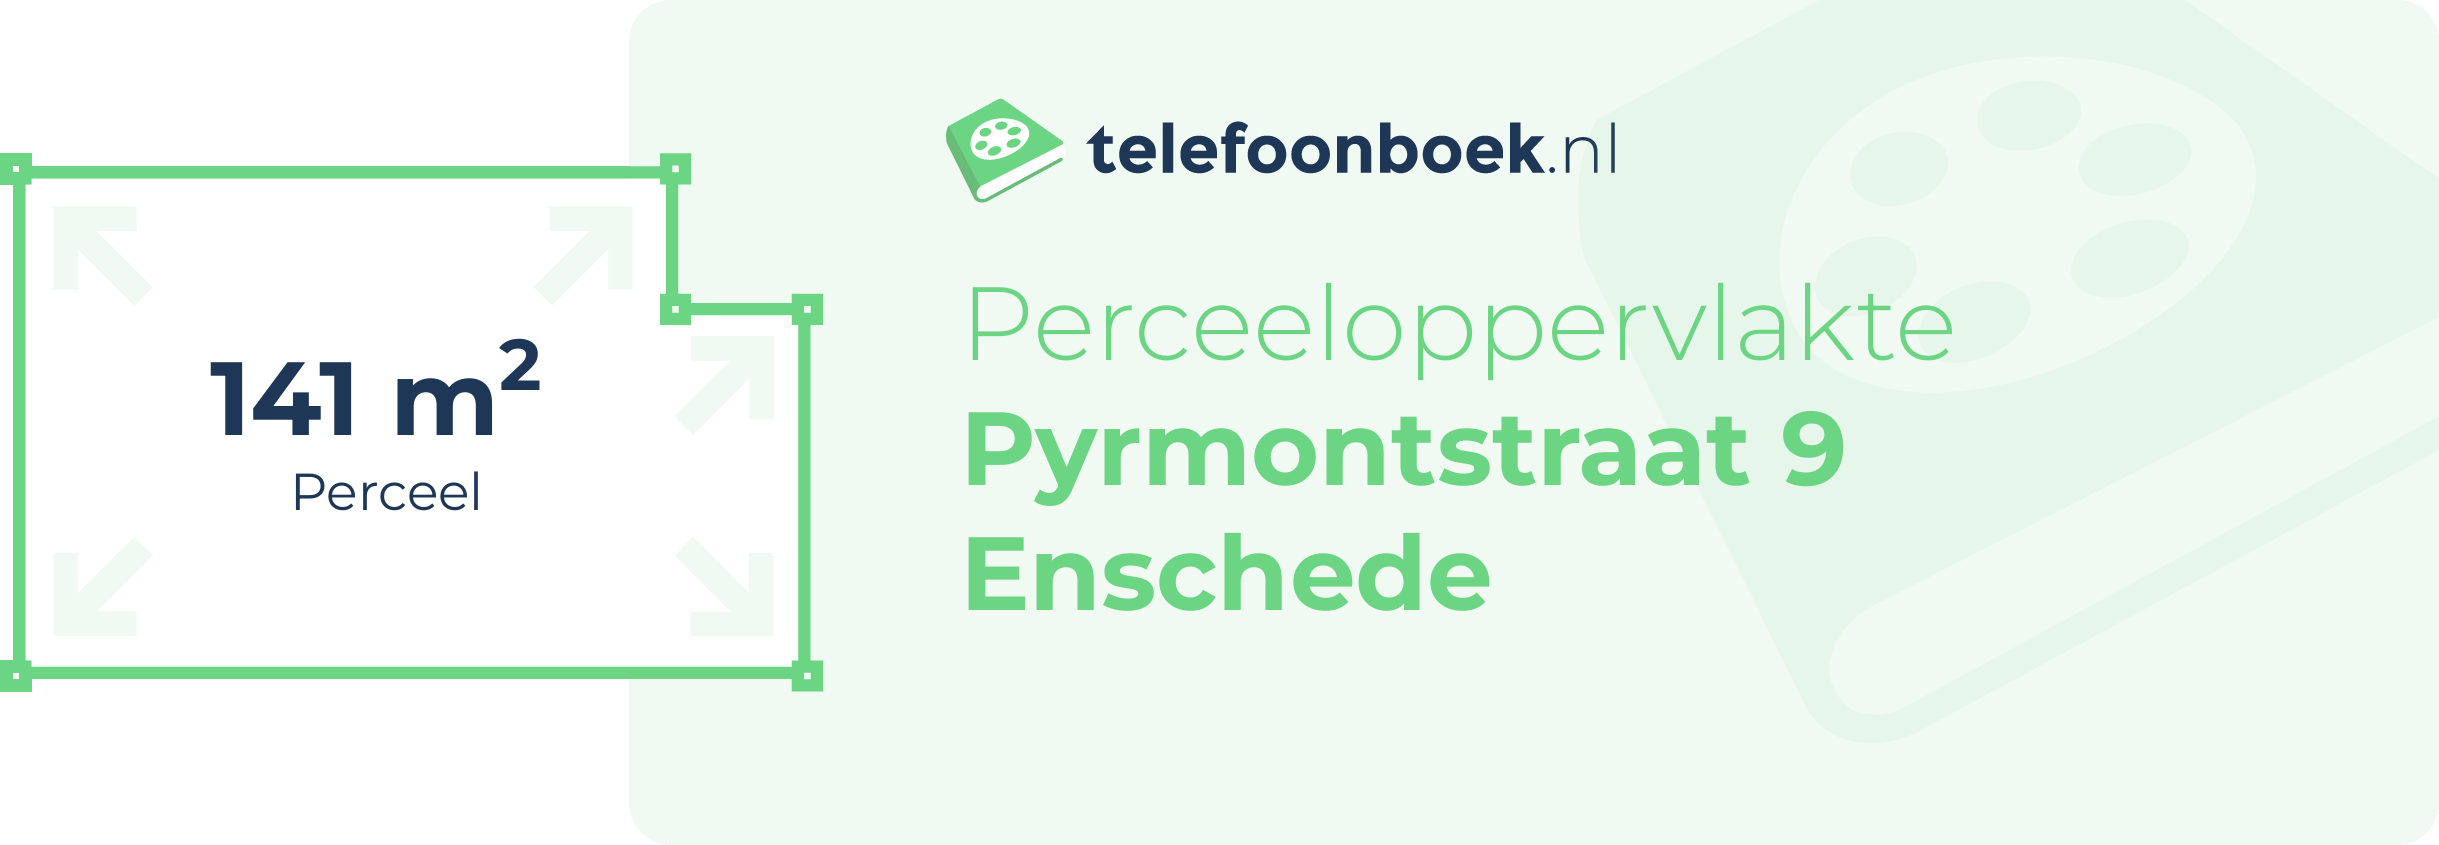 Perceeloppervlakte Pyrmontstraat 9 Enschede